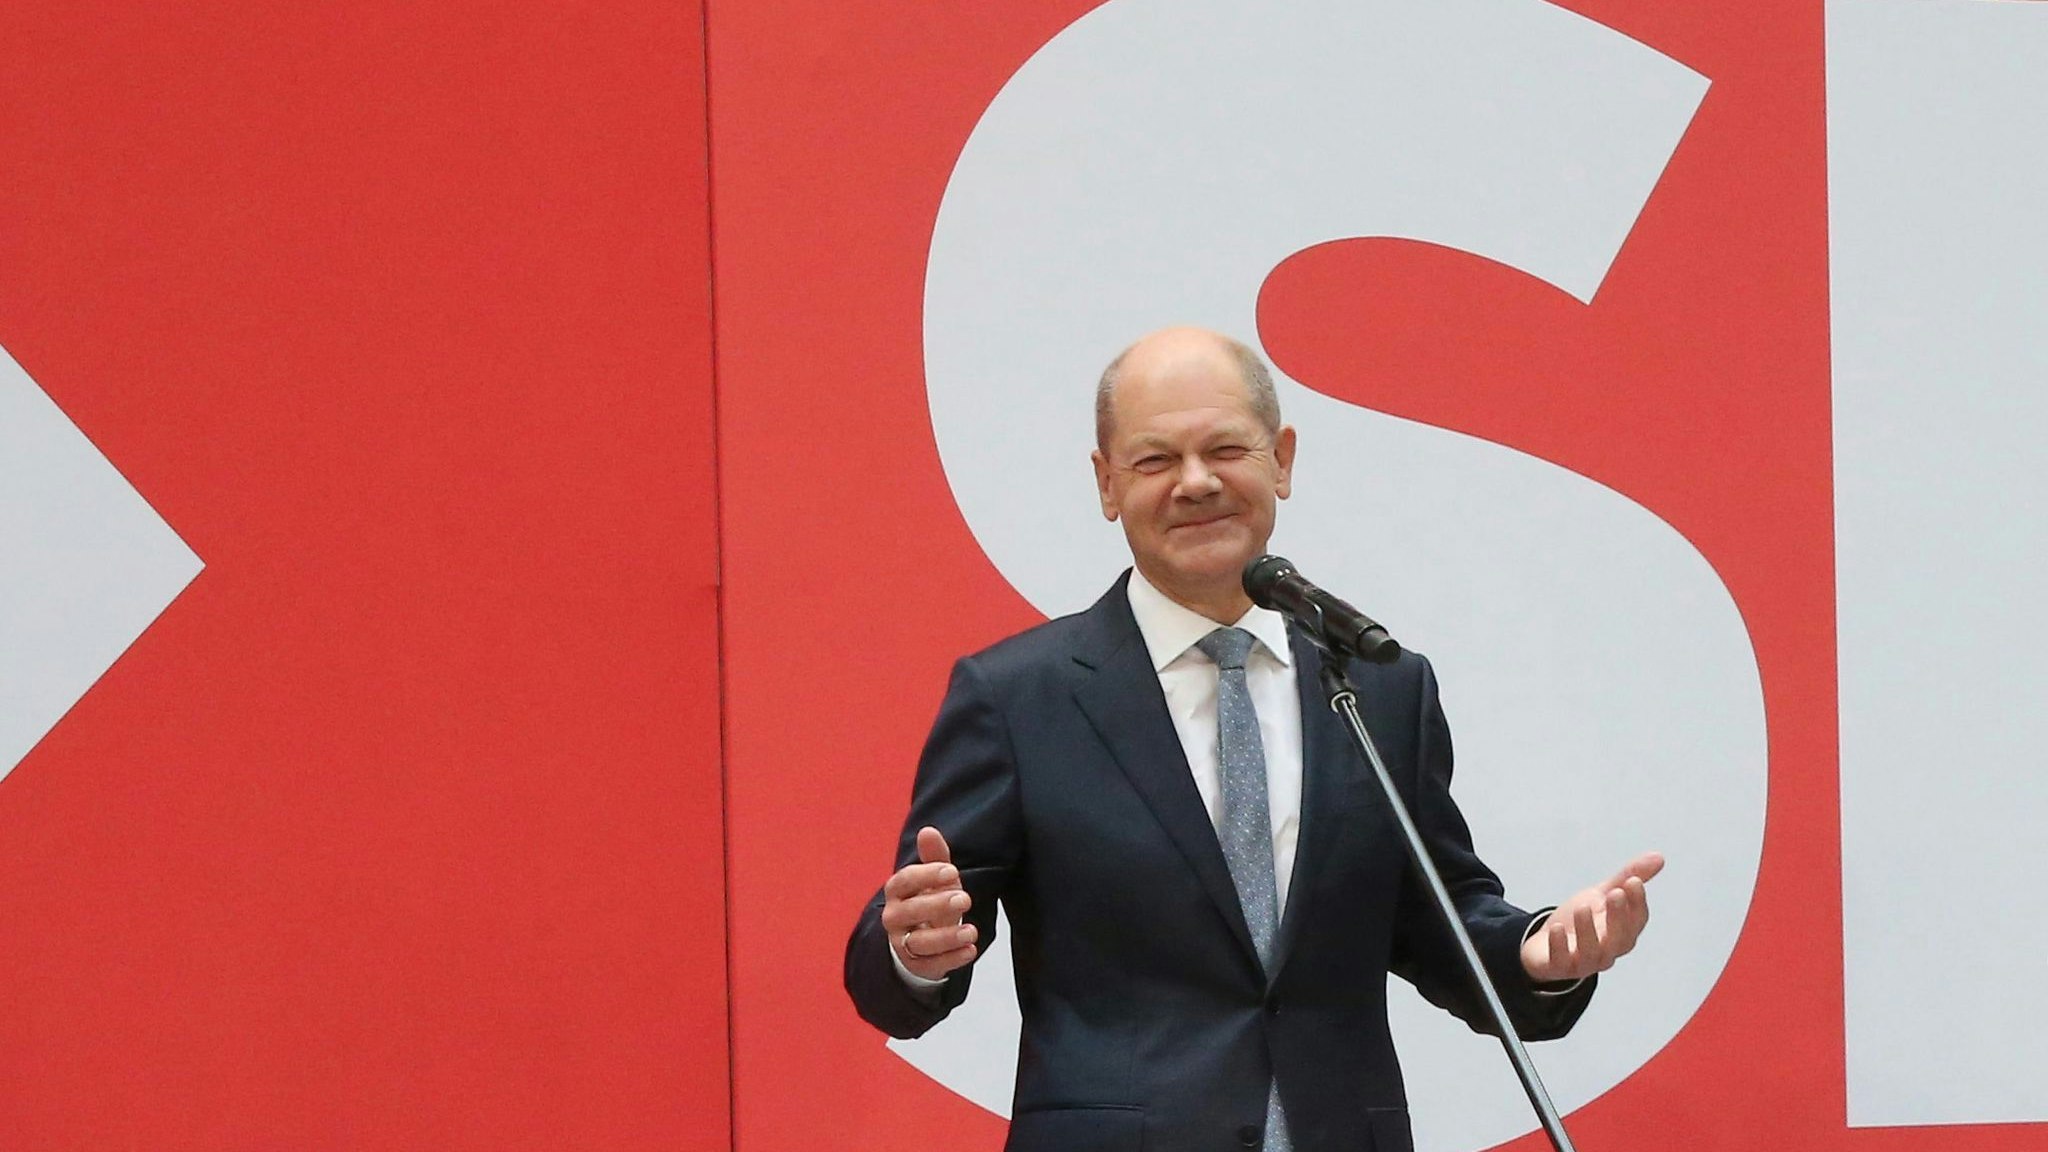 SPD-Kanzlerkandidat Olaf Scholz sieht für seine Partei einen "sichtbaren Auftrag" zur Regierungsbildung. Foto: dpa